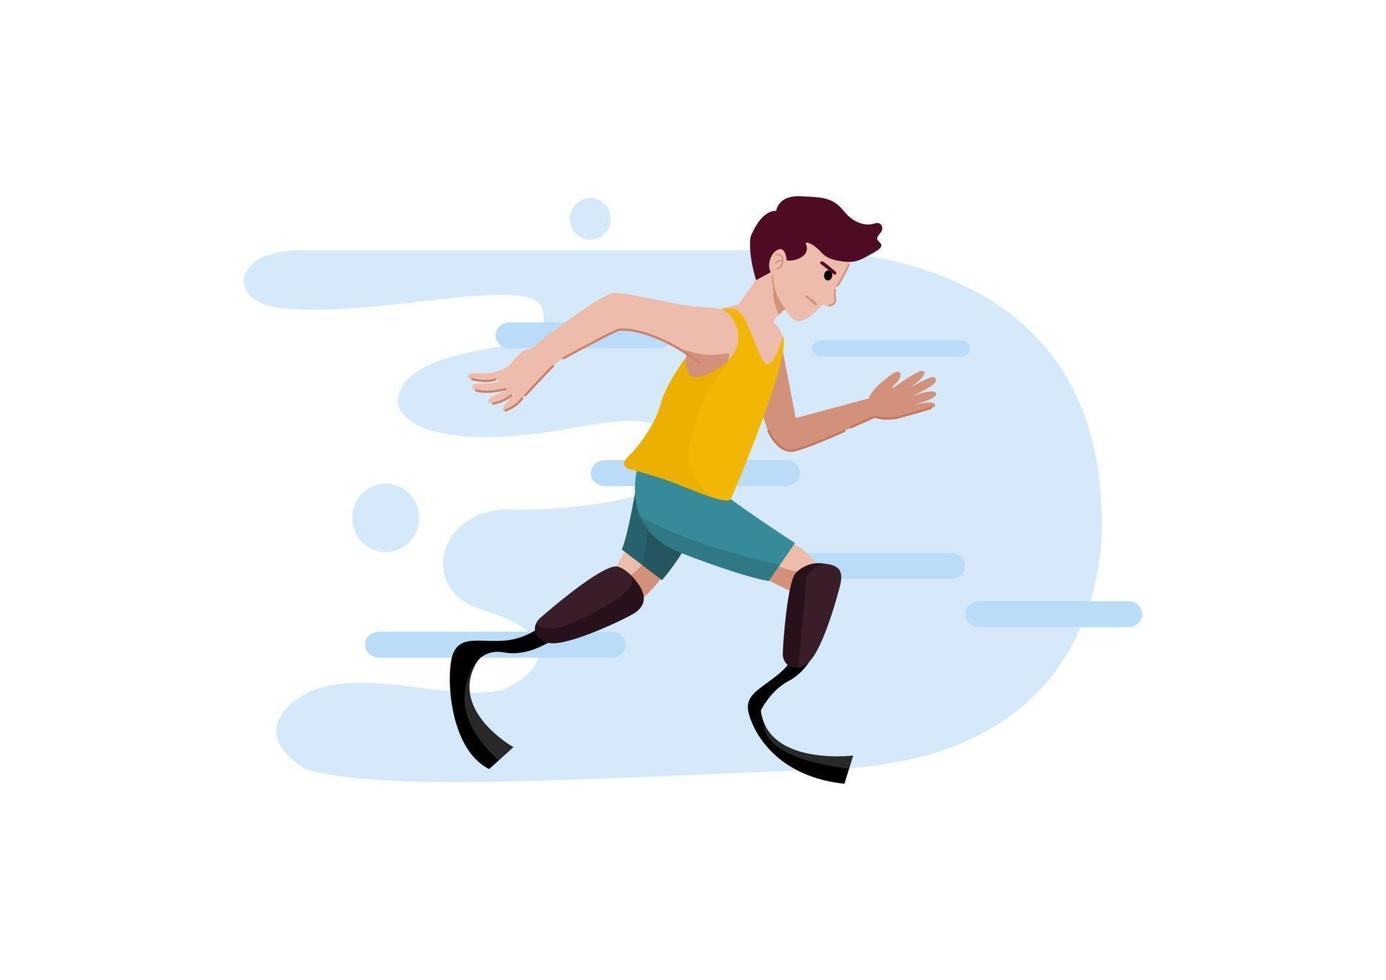 homem deficiente correndo com prótese na perna, ilustração vetorial vetor